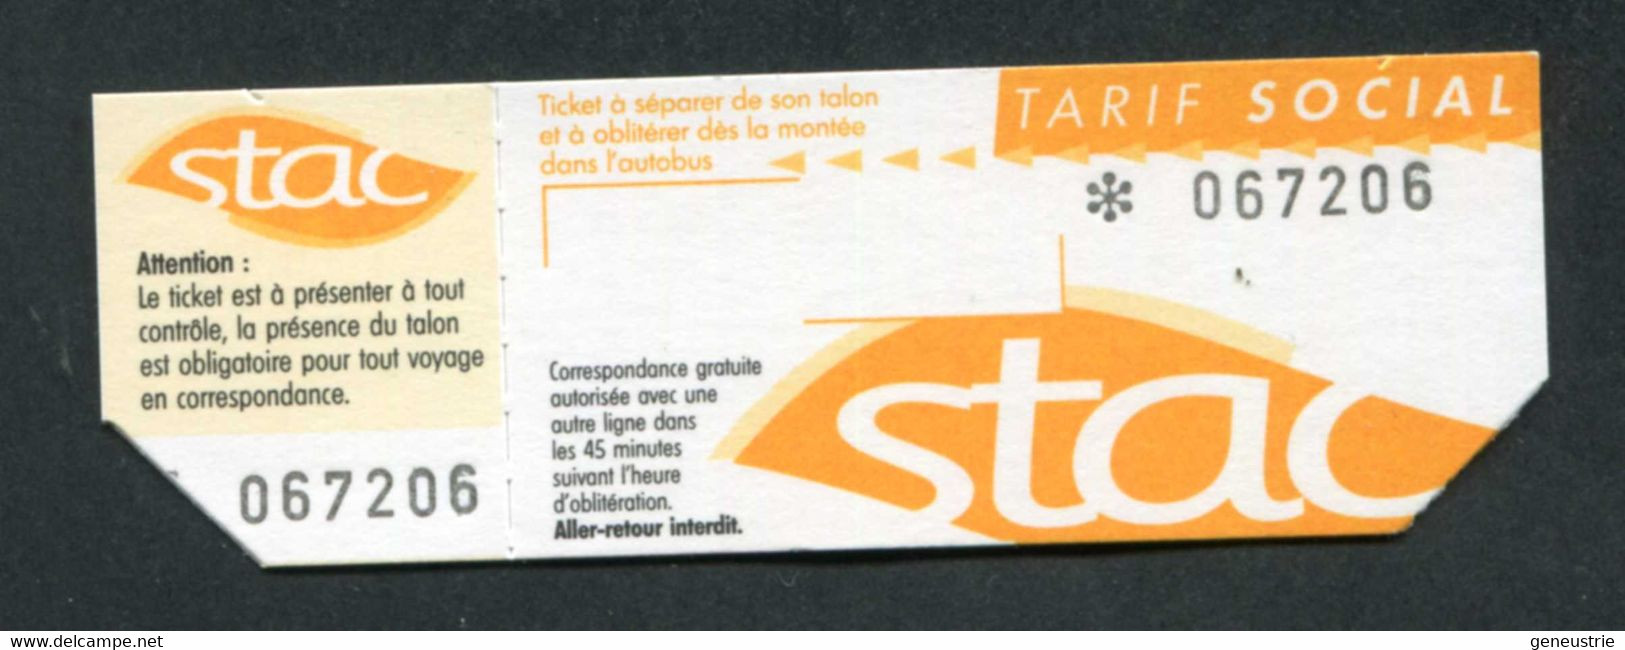 Ticket De Bus (avec Talon) De Chambéry (Savoie) "STAC" Tarif Social - French Bus Ticket - Europe